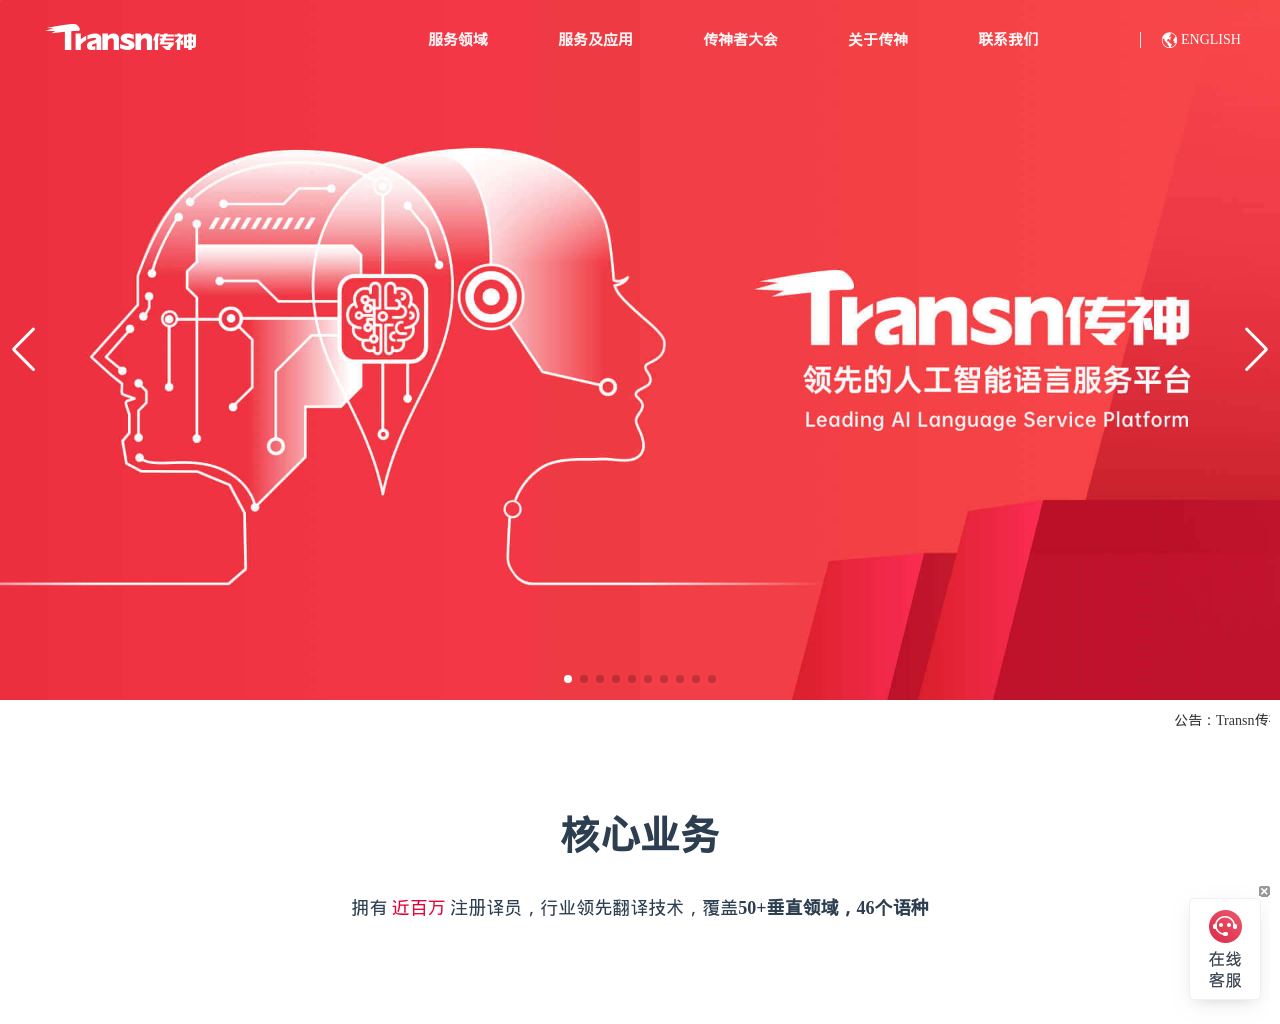 transn.com